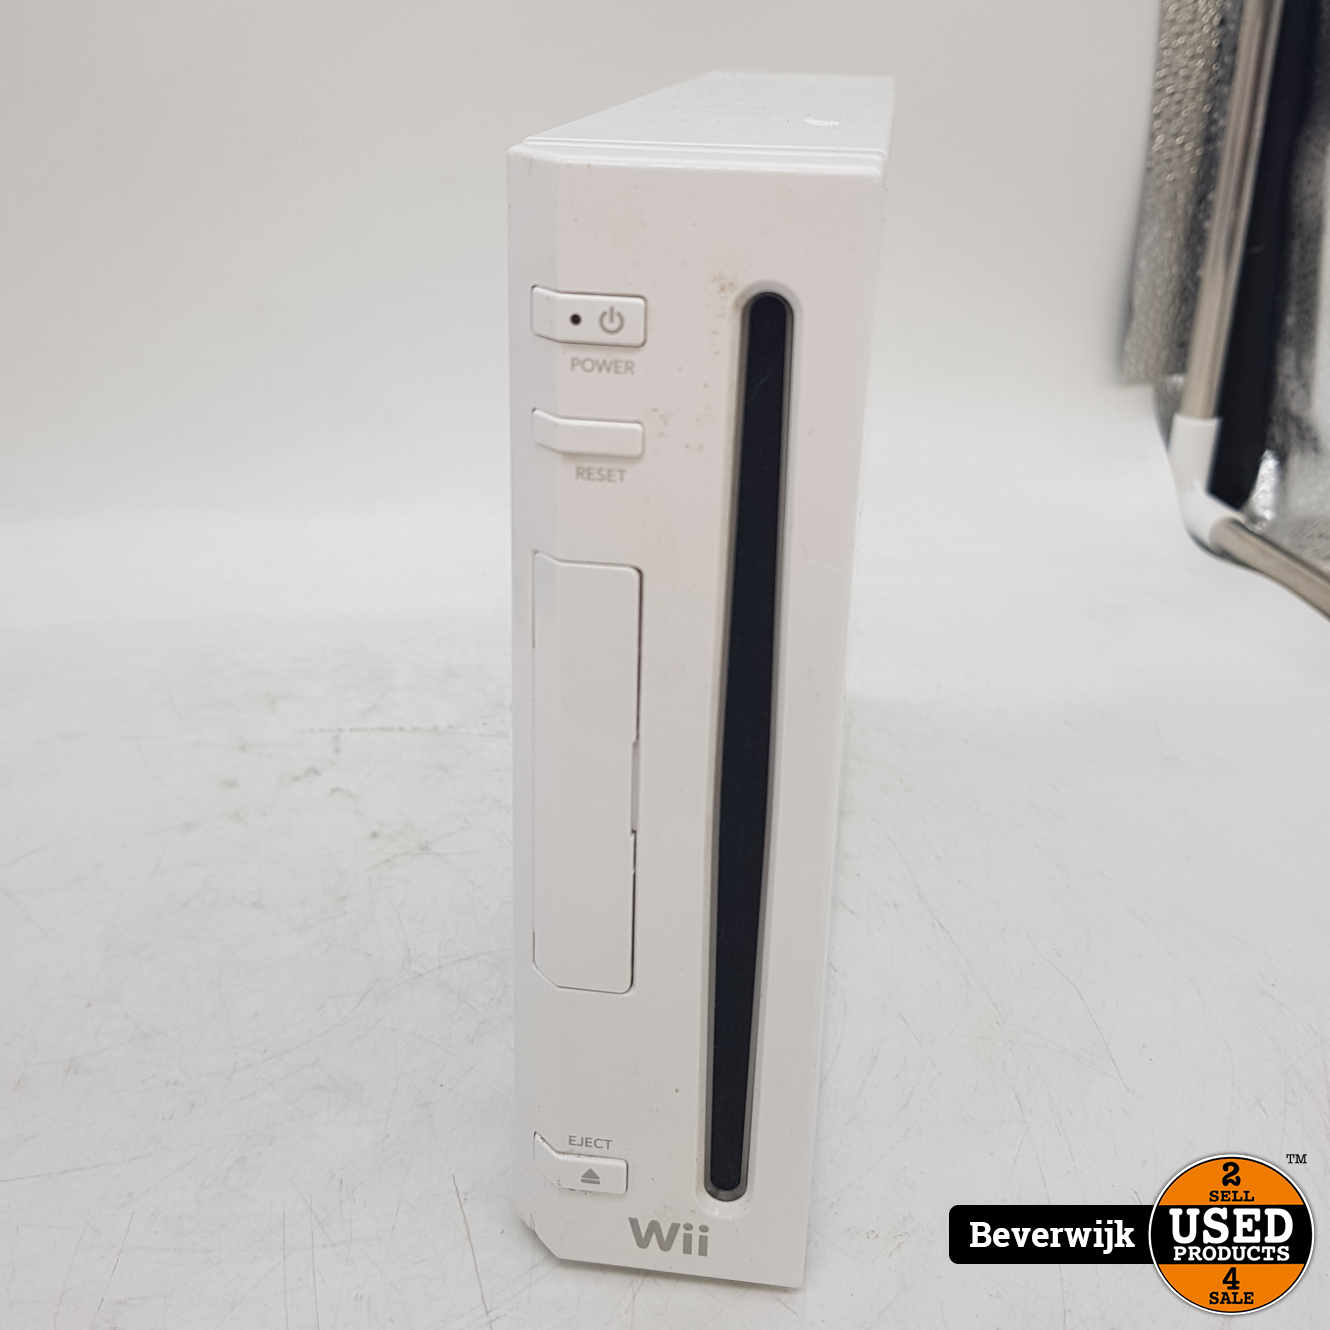 Categorie Spreekwoord Silicium Nintendo Wii Spelcomputer - In Goede Staat - Used Products Beverwijk